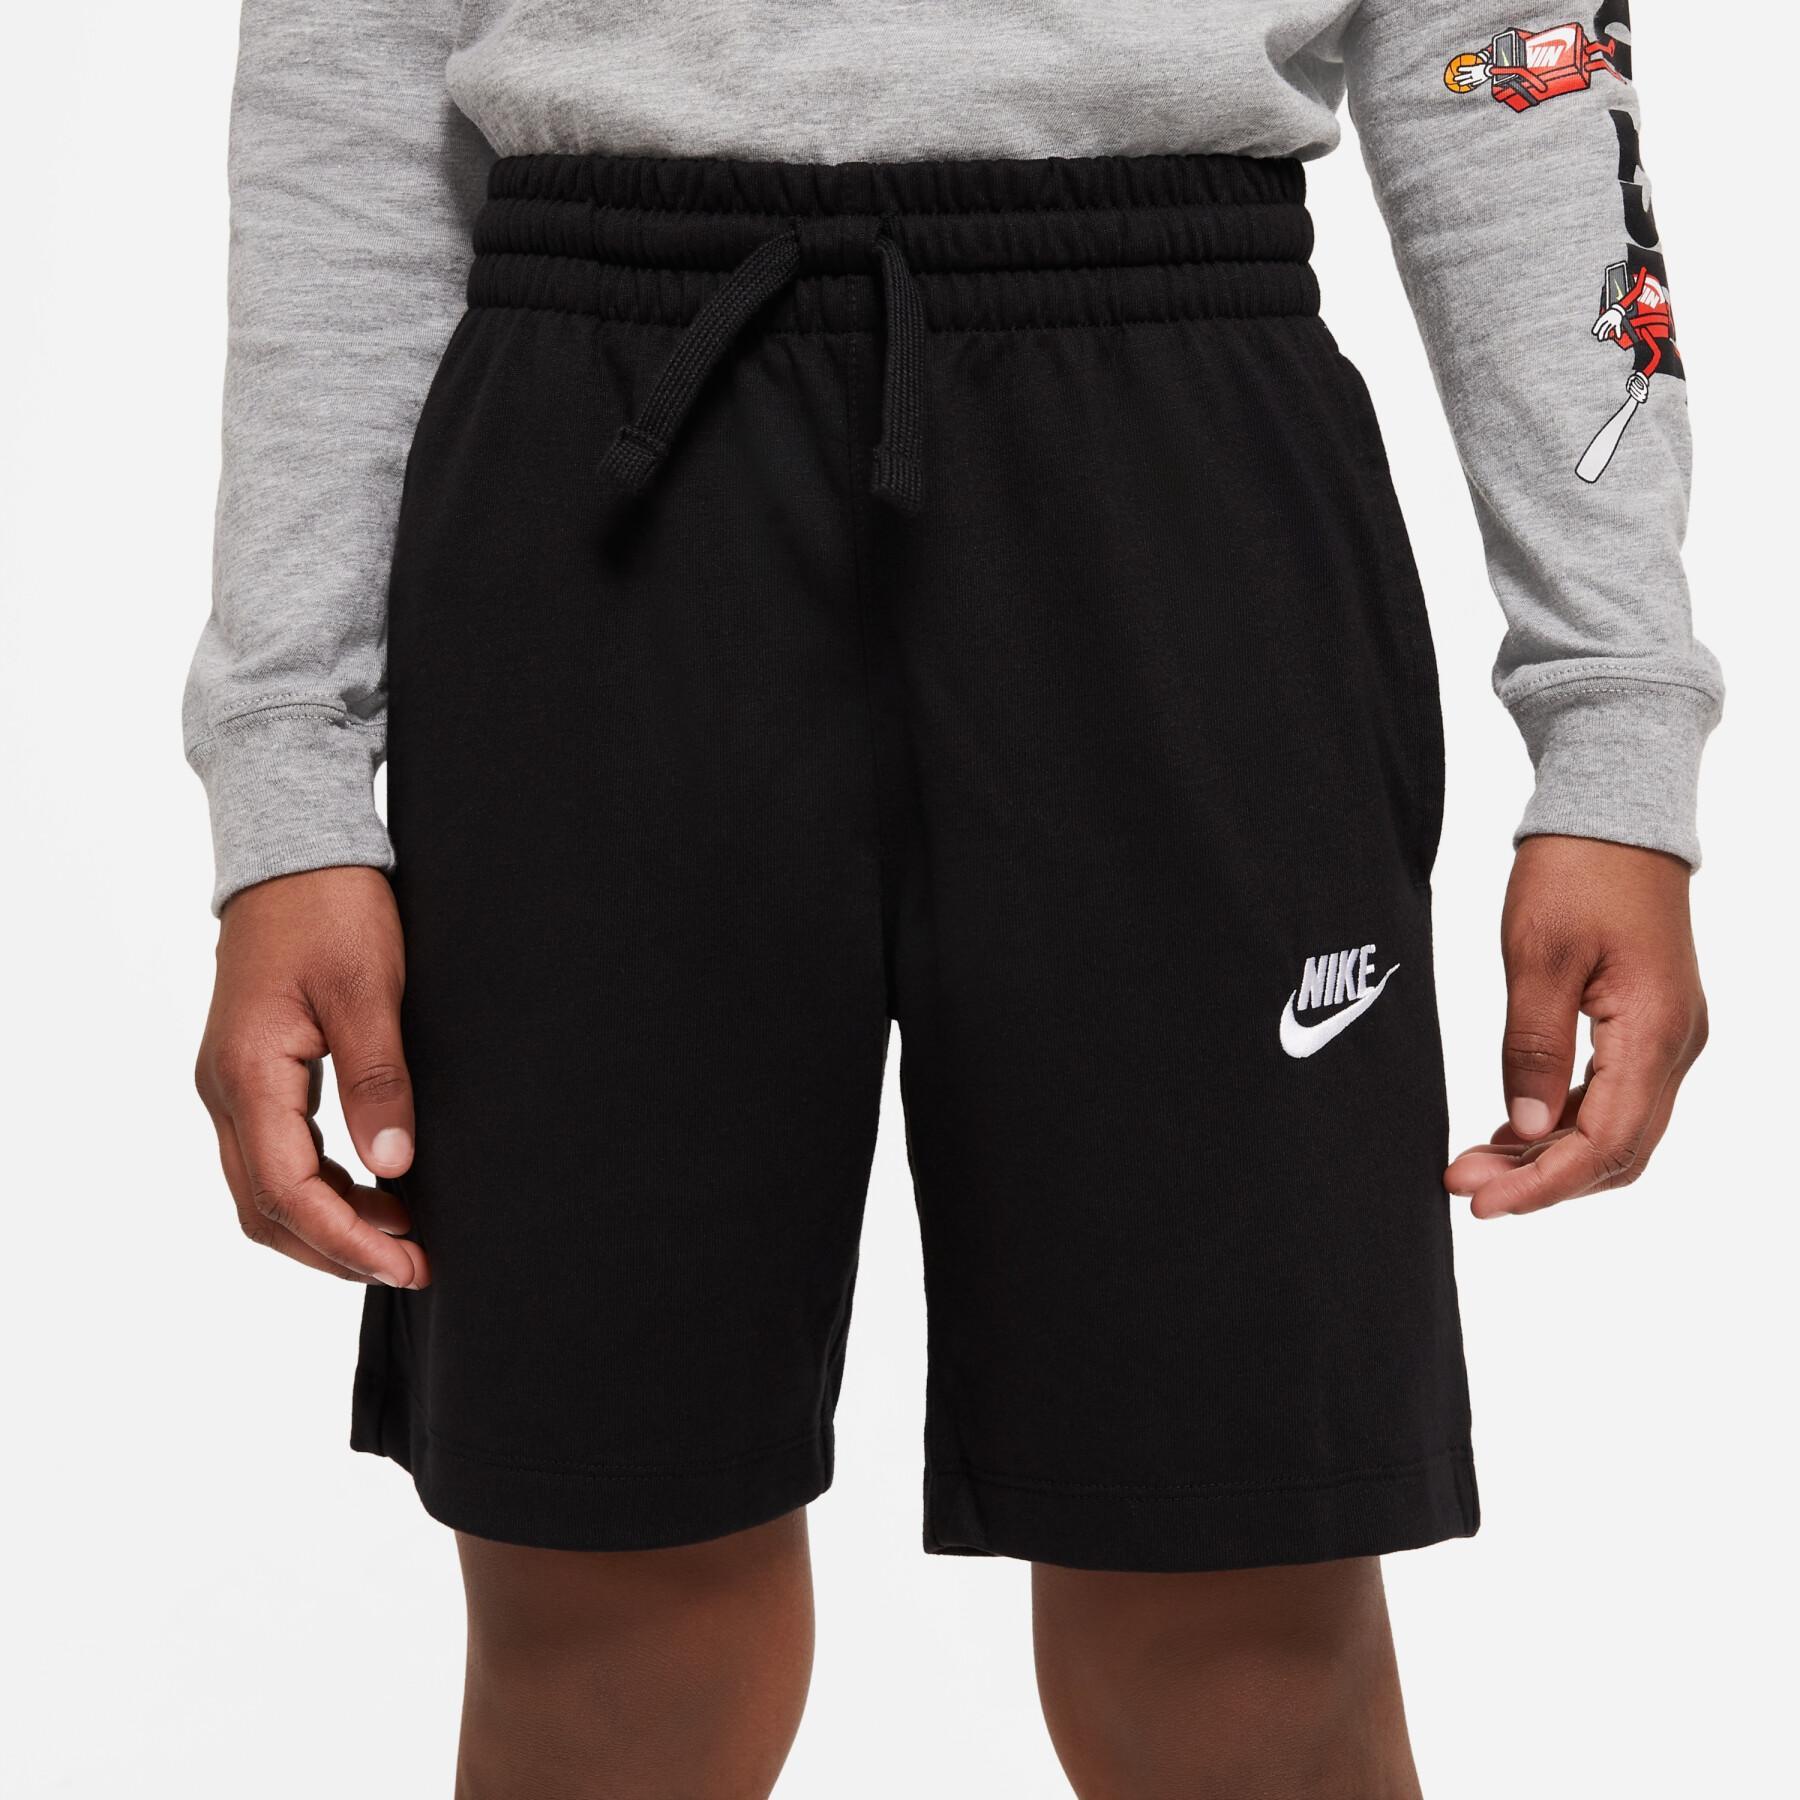 Pantalón corto para niños Nike Sportswear